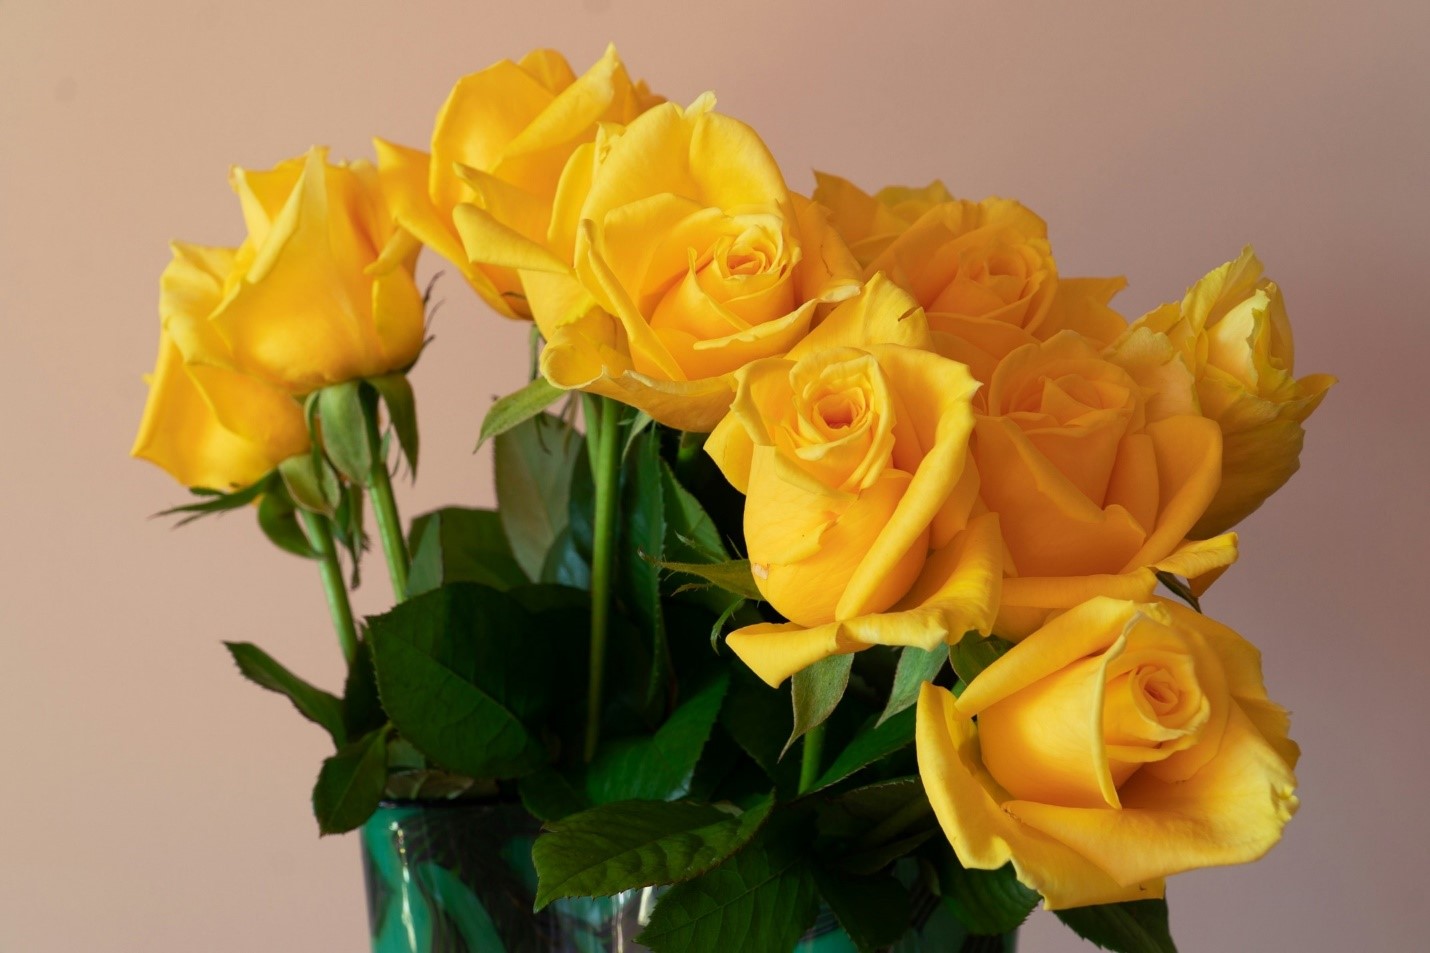 להרשים את האהובים עליכם: המדריך לקניית זר פרחים